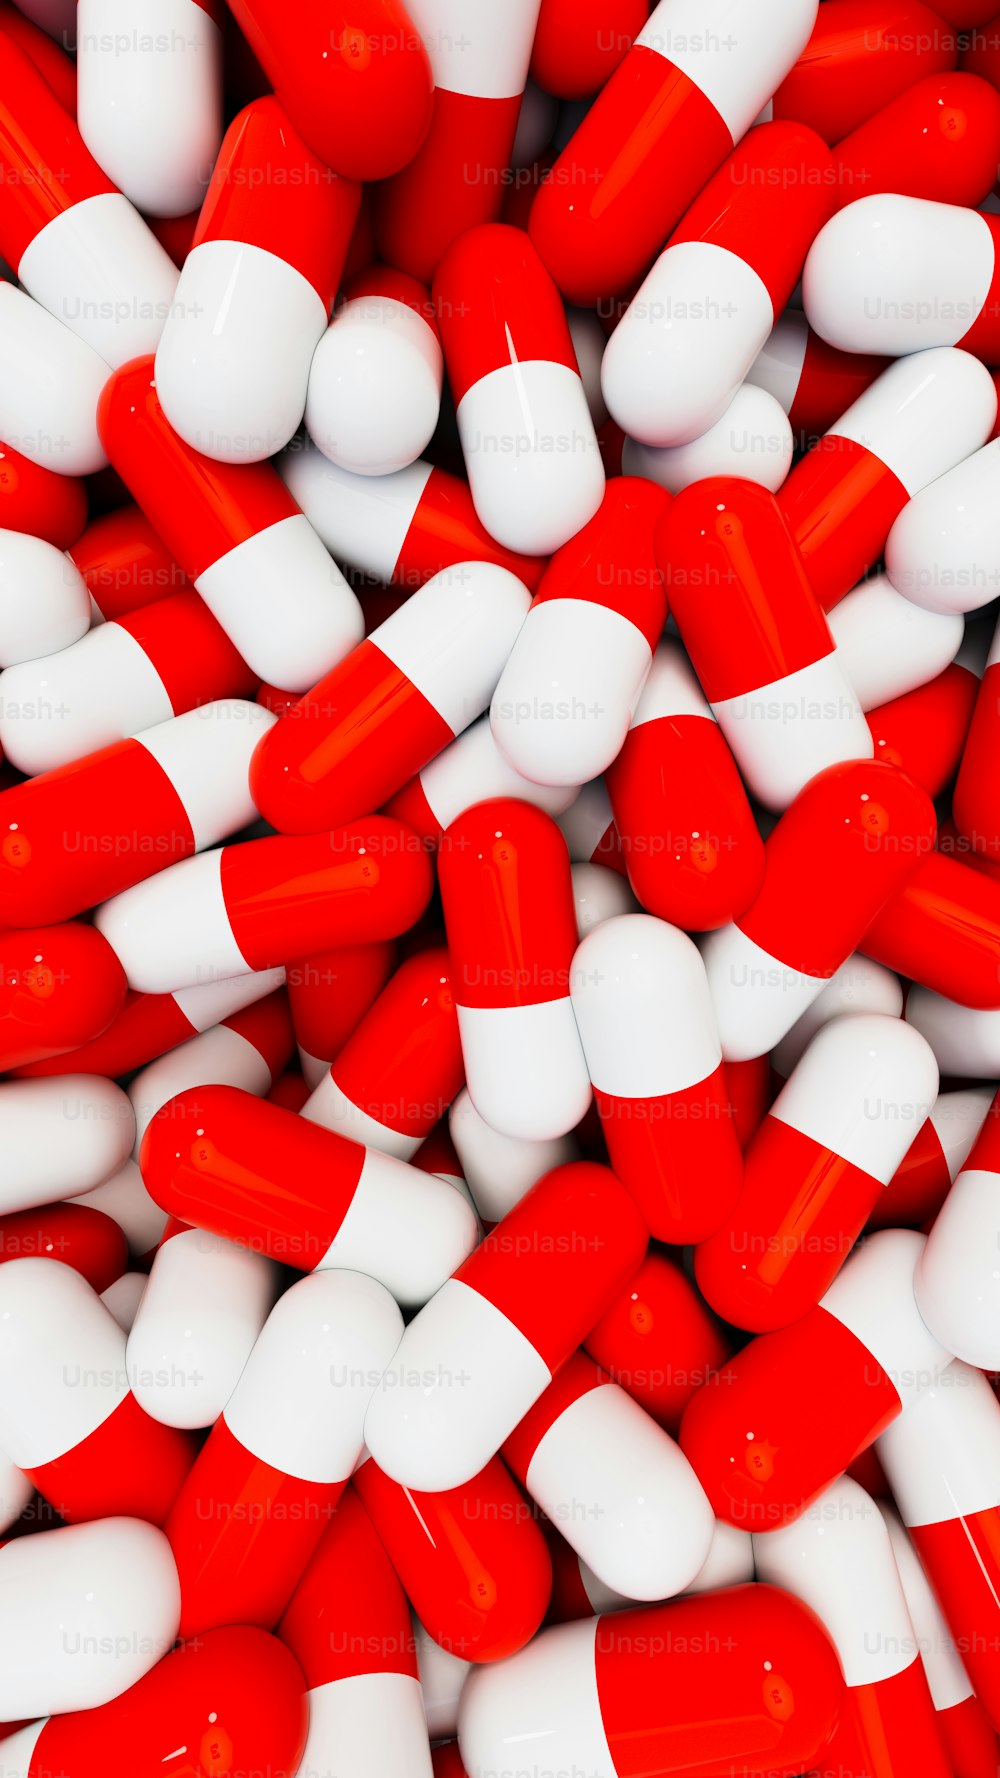 une pile de pilules rouges et blanches